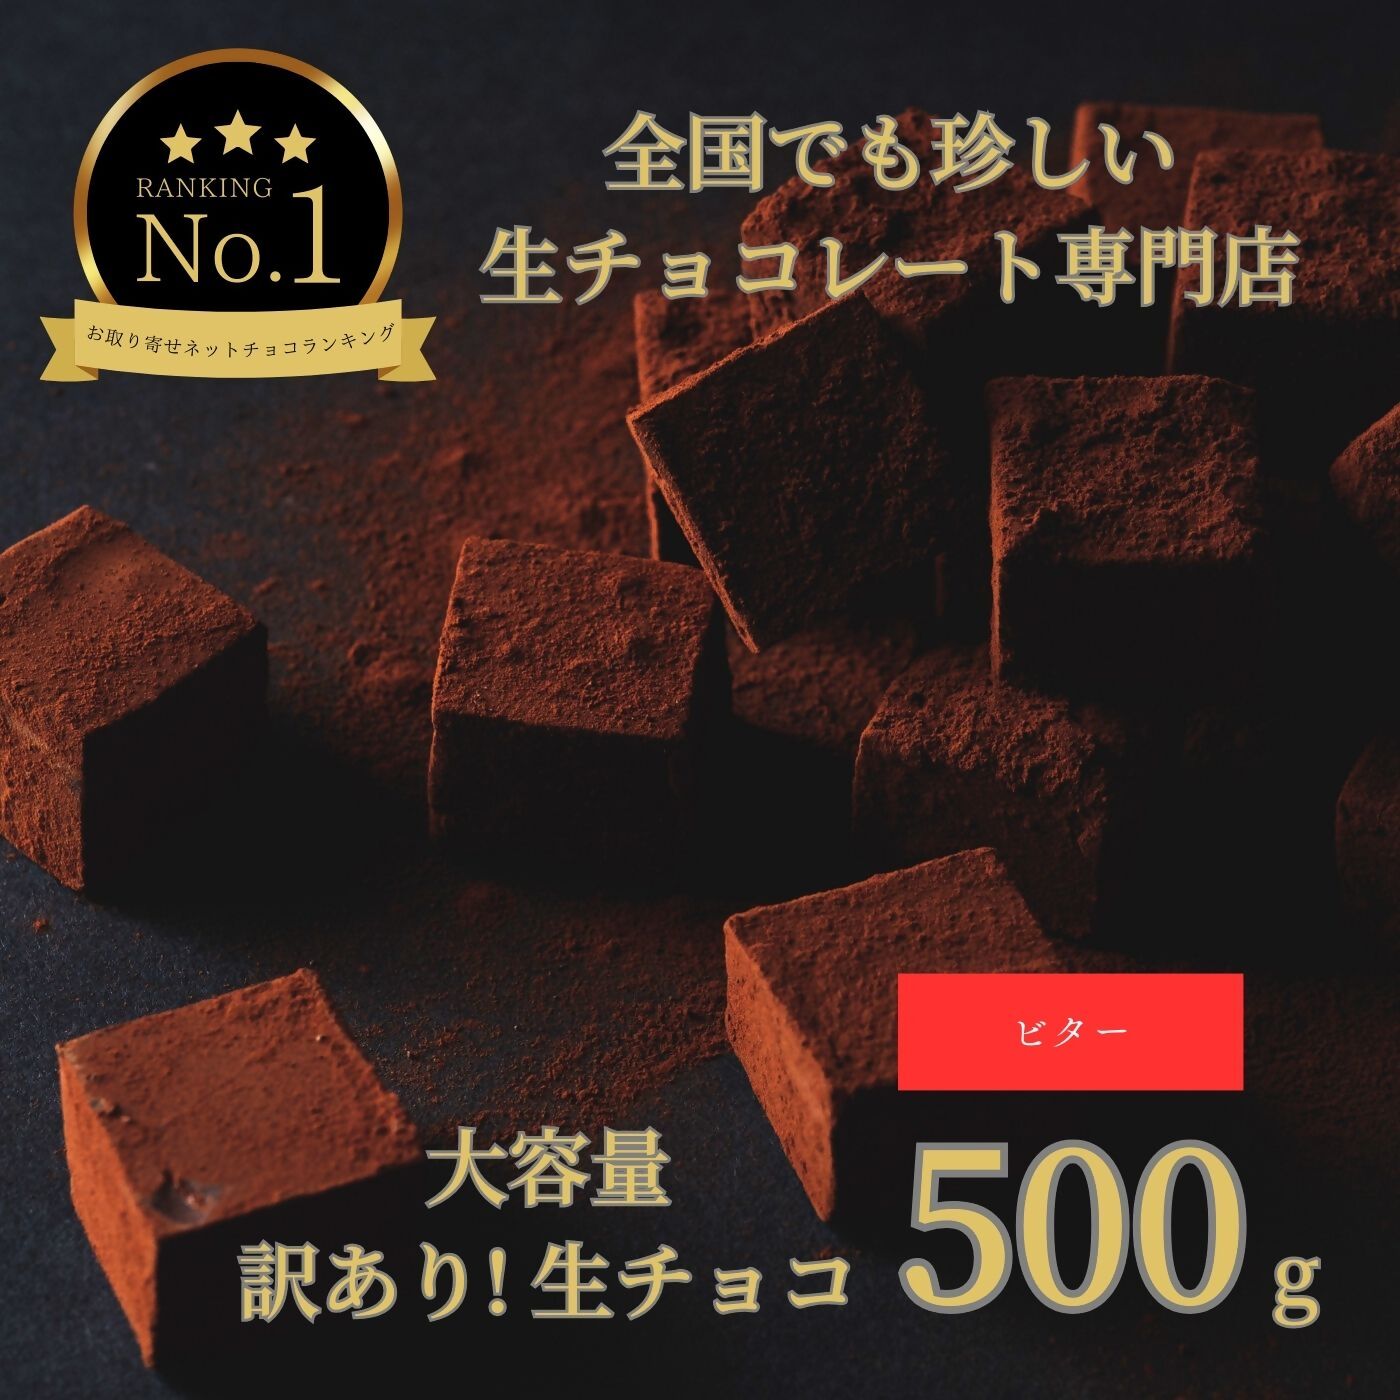 1486 大容量 訳あり 生チョコレート 500g(ビター) スイーツ 鳥取 送料無料 ギフト バレンタイン